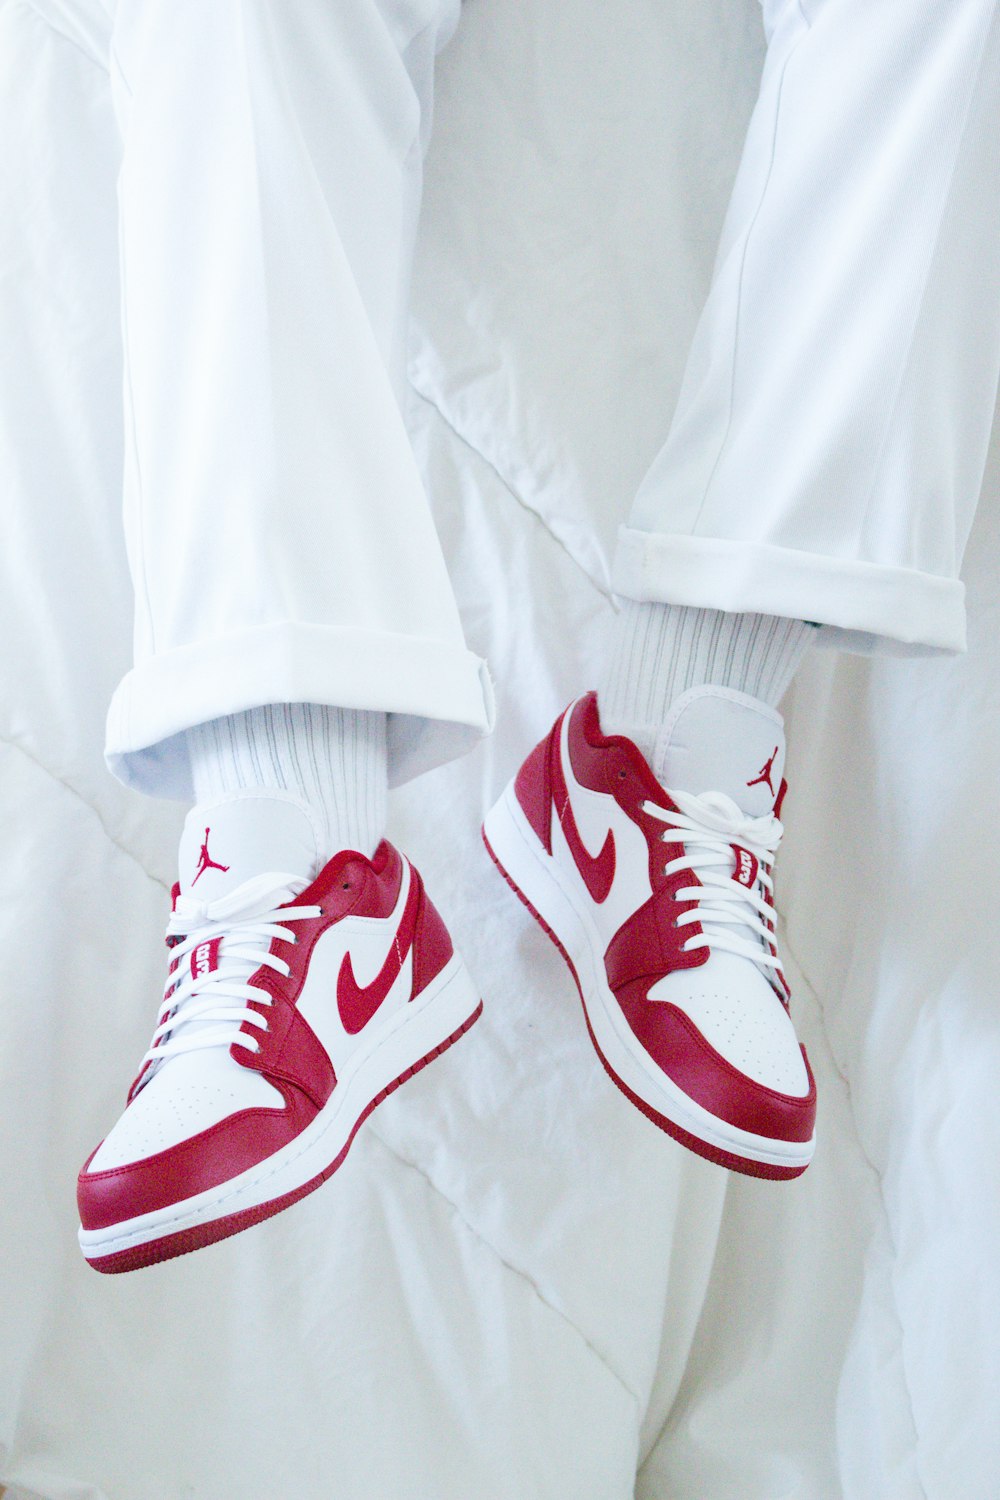 sneakers nike rosse e bianche foto – Stile Immagine gratuita su Unsplash